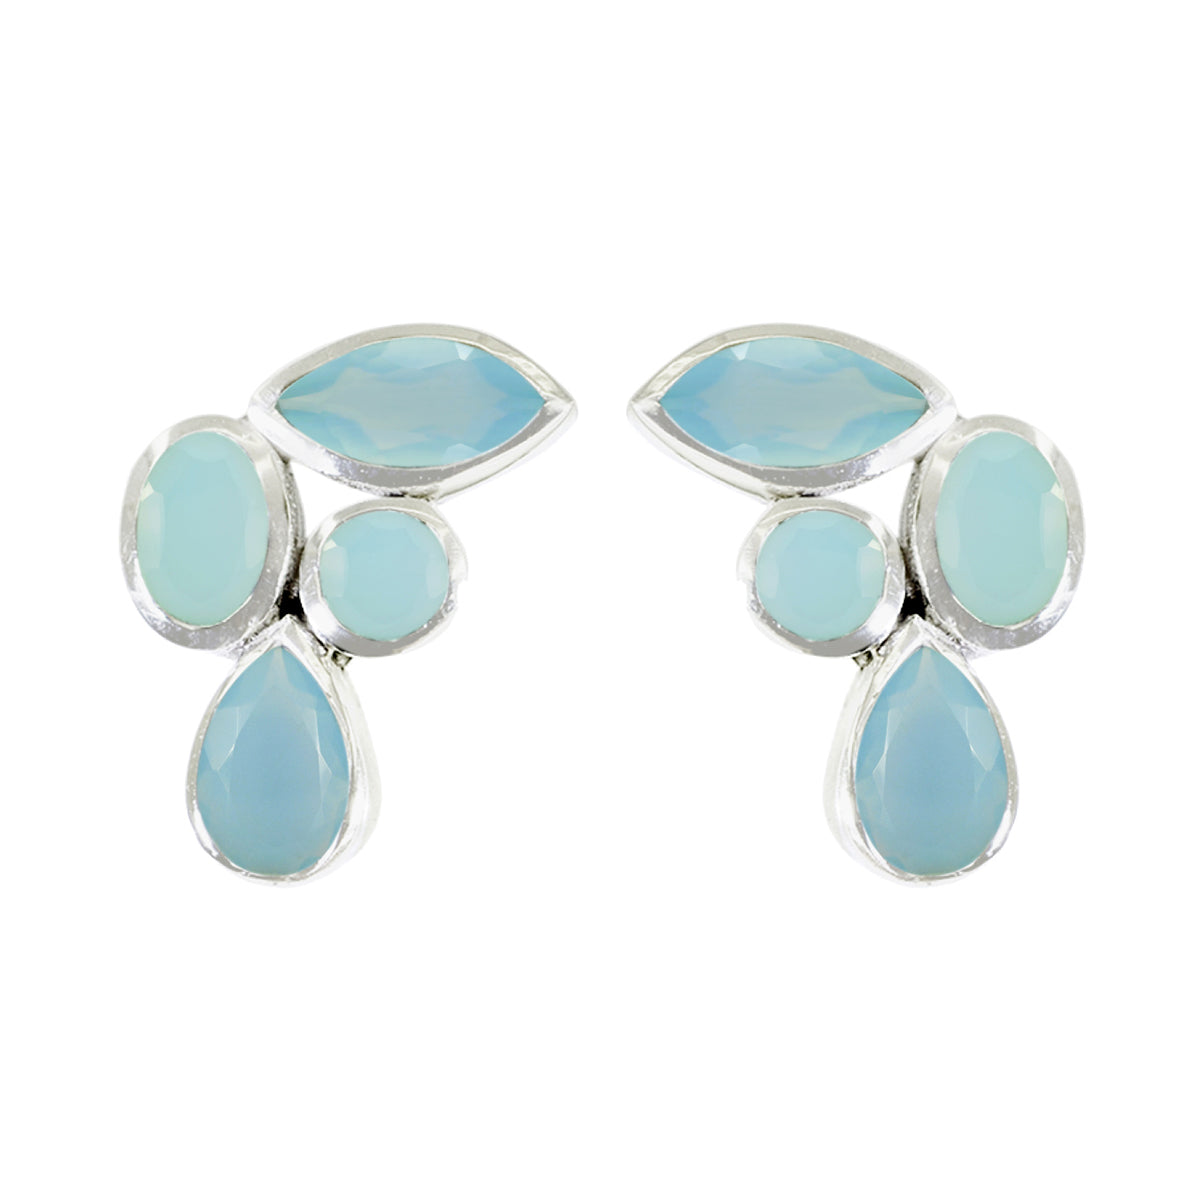 Riyo Ravishing Sterling Silver Earring For Lady Aqua Chalcedony Earring Bezel Setting Blue Earring Stud Earring